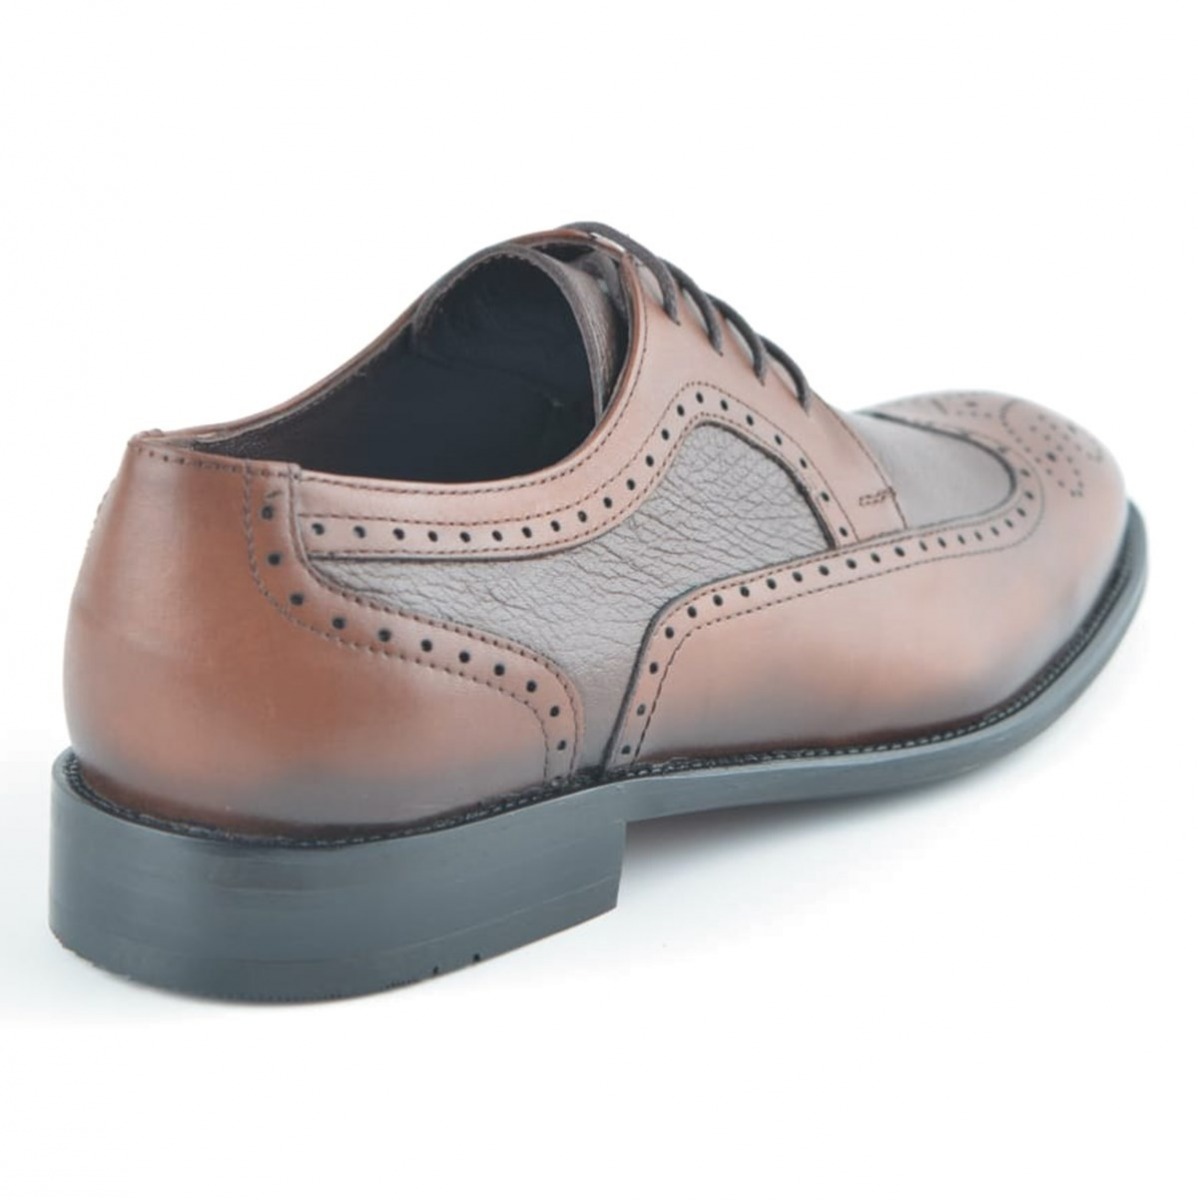 Flo Erkek Deri Klasik Ayakkabı İ20S-191180-4 M 1000 TABA. 3